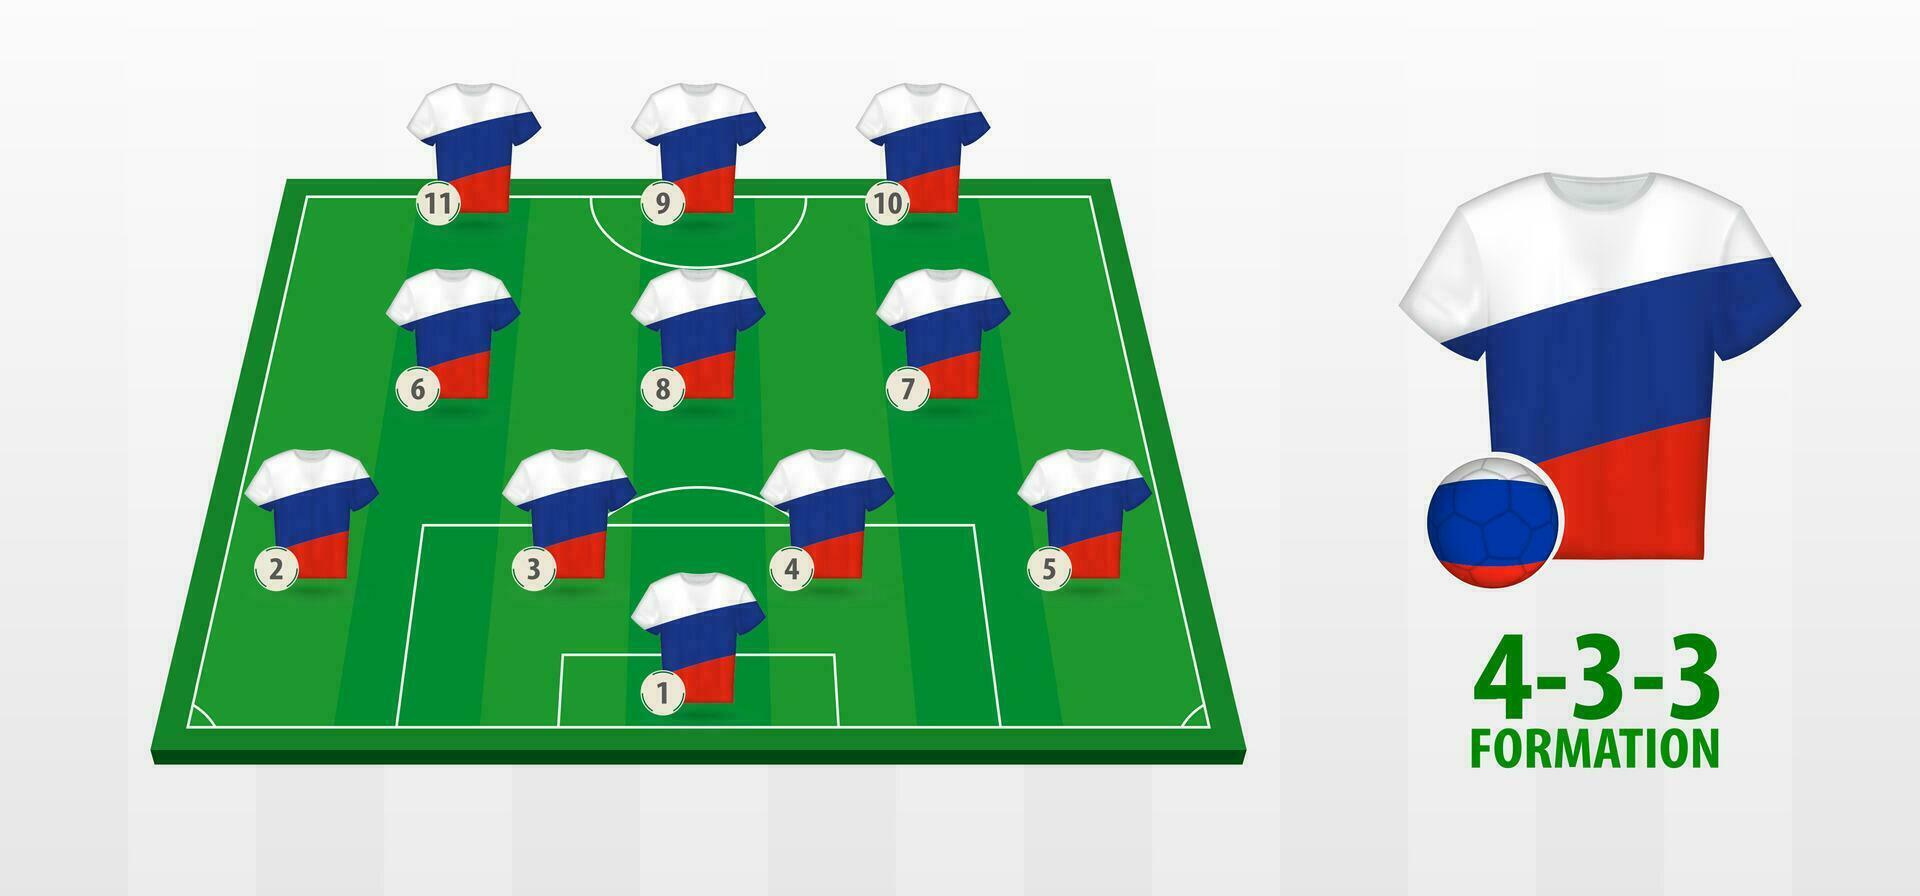 Rusia nacional fútbol americano equipo formación en fútbol americano campo. vector